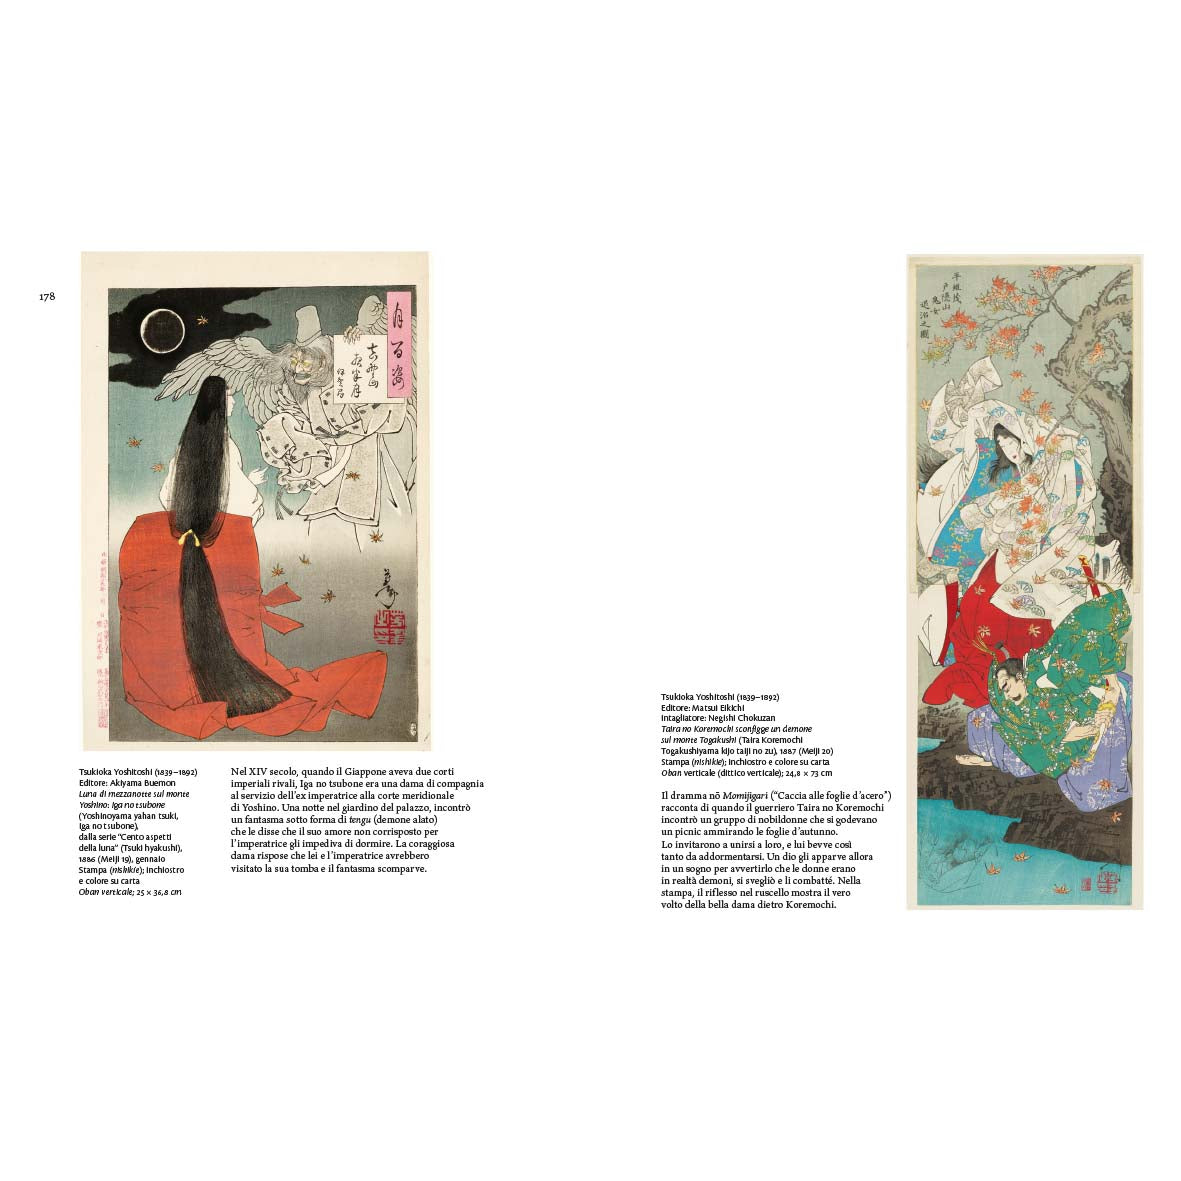 Immagini del Mondo fluttuante - Stampe giapponesi nella collezione del Museum of Fine Arts di Boston